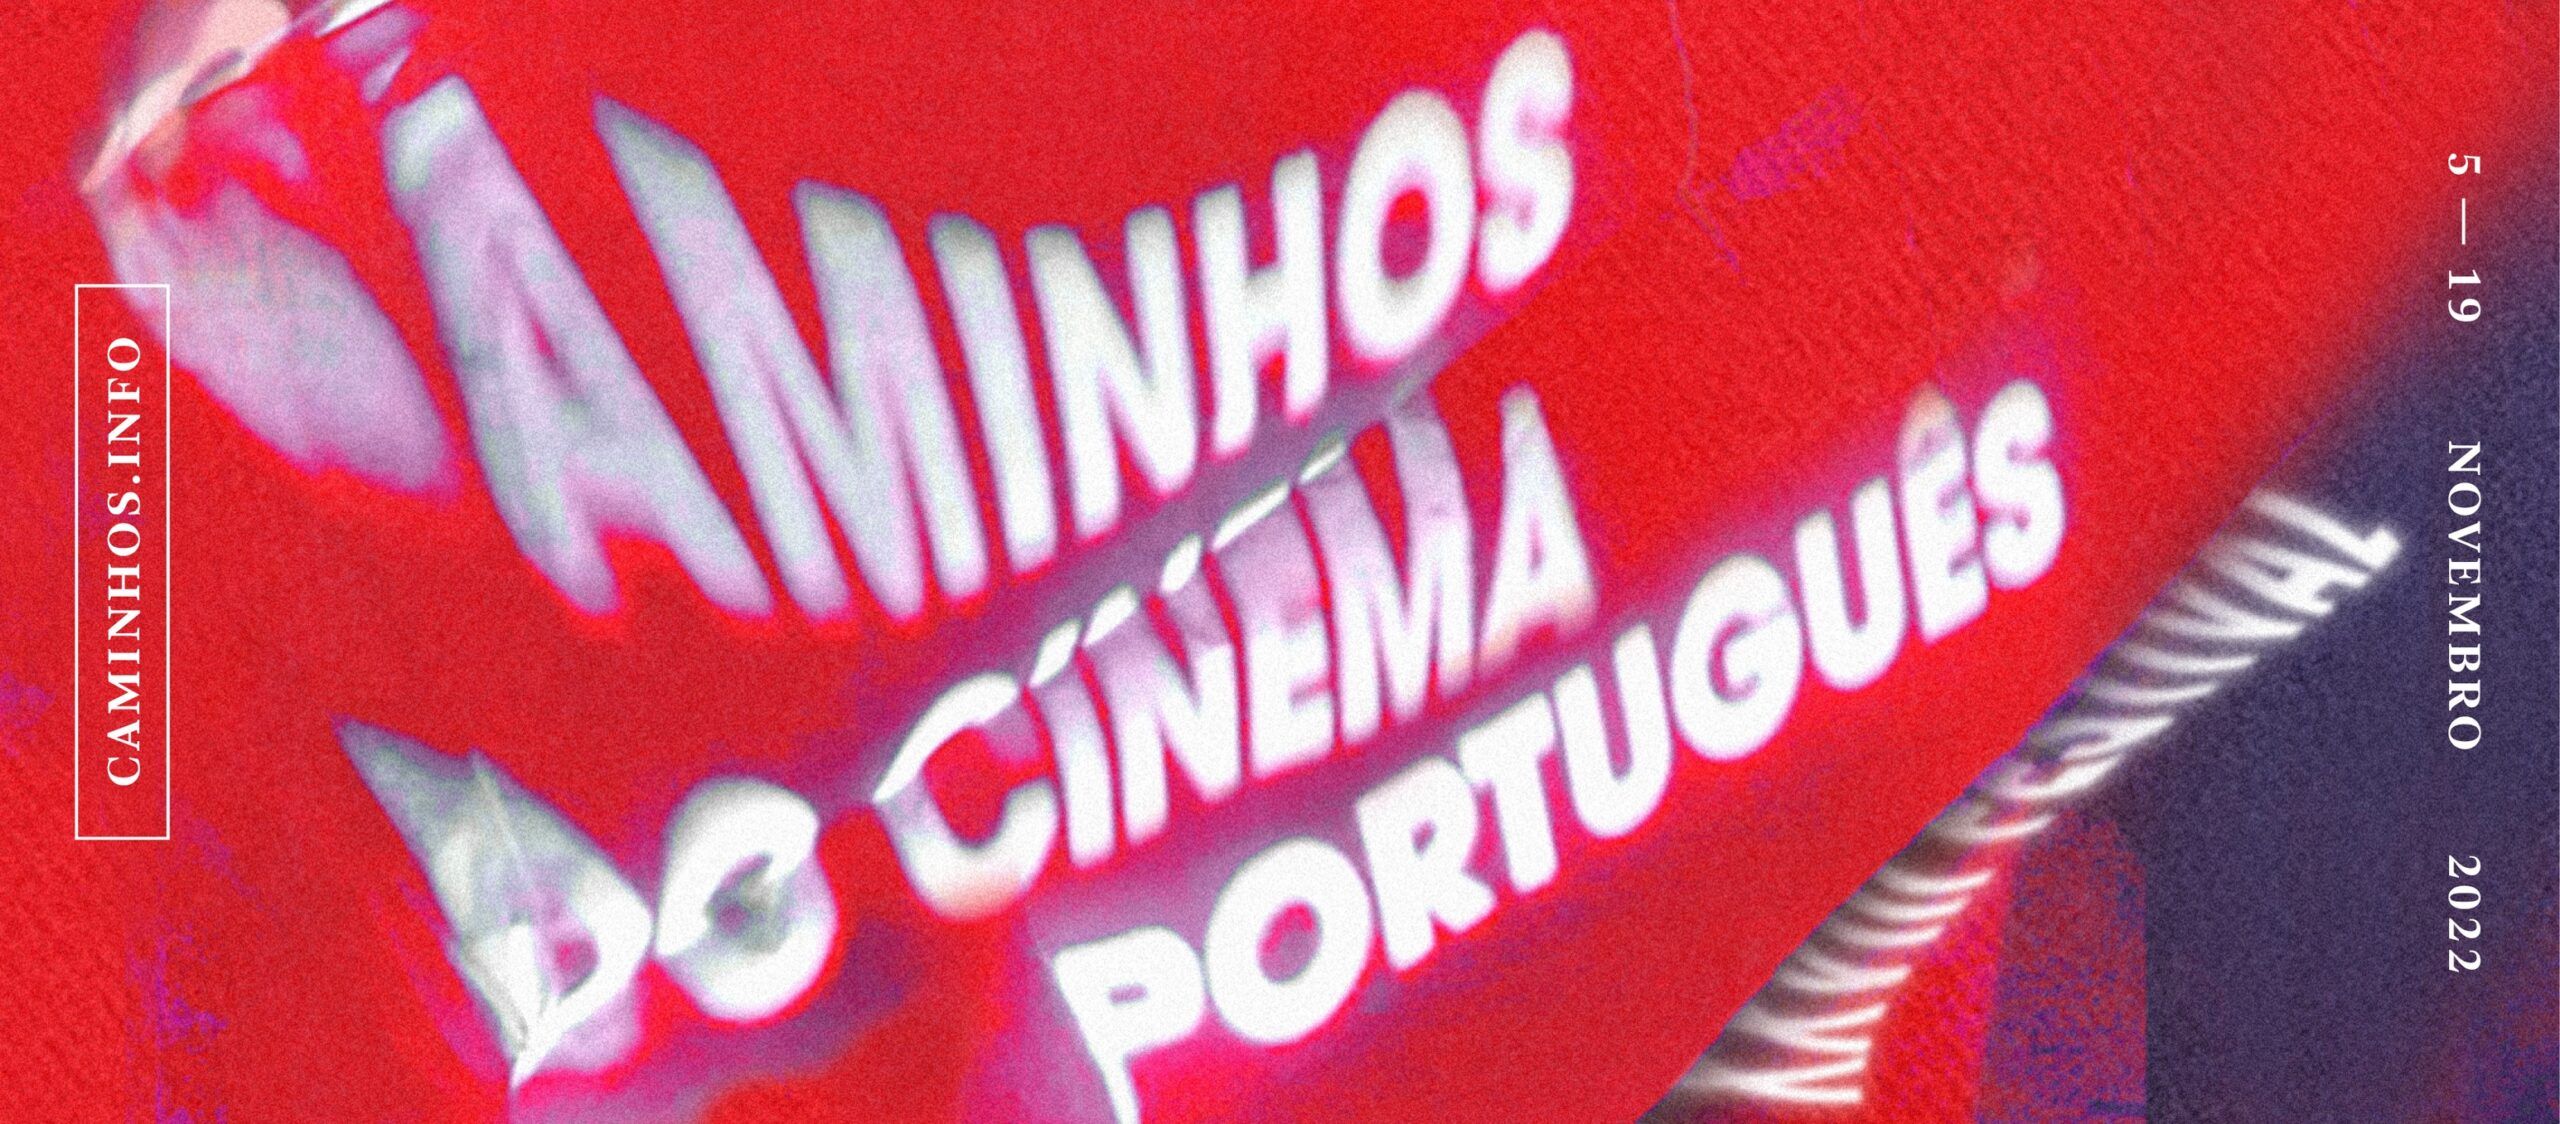 caminhos-cinema-portugues-2022-1